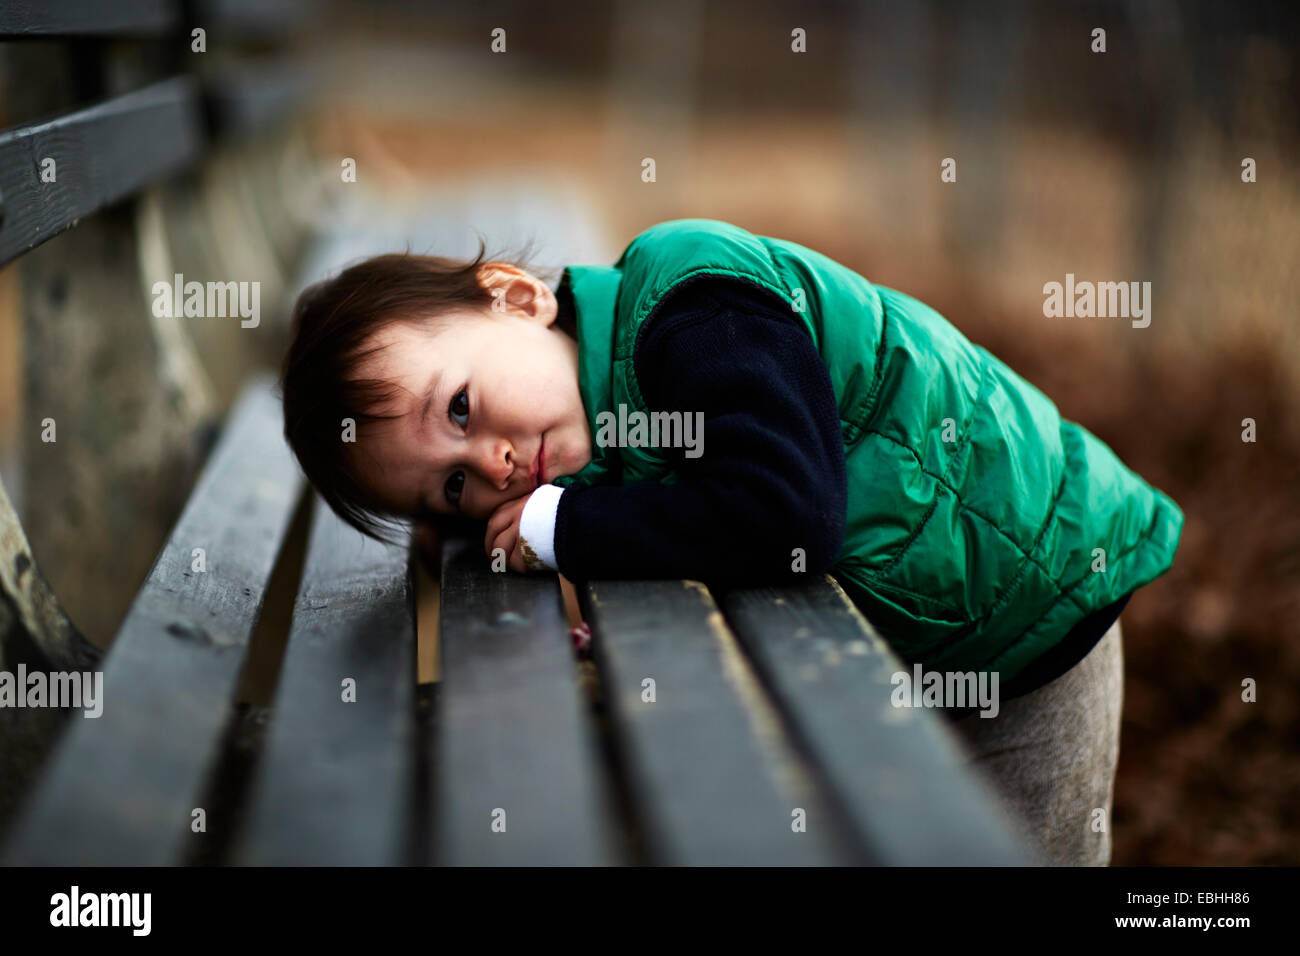 Ritratto di bimbi maschio inclinato in avanti su una panchina nel parco Foto Stock